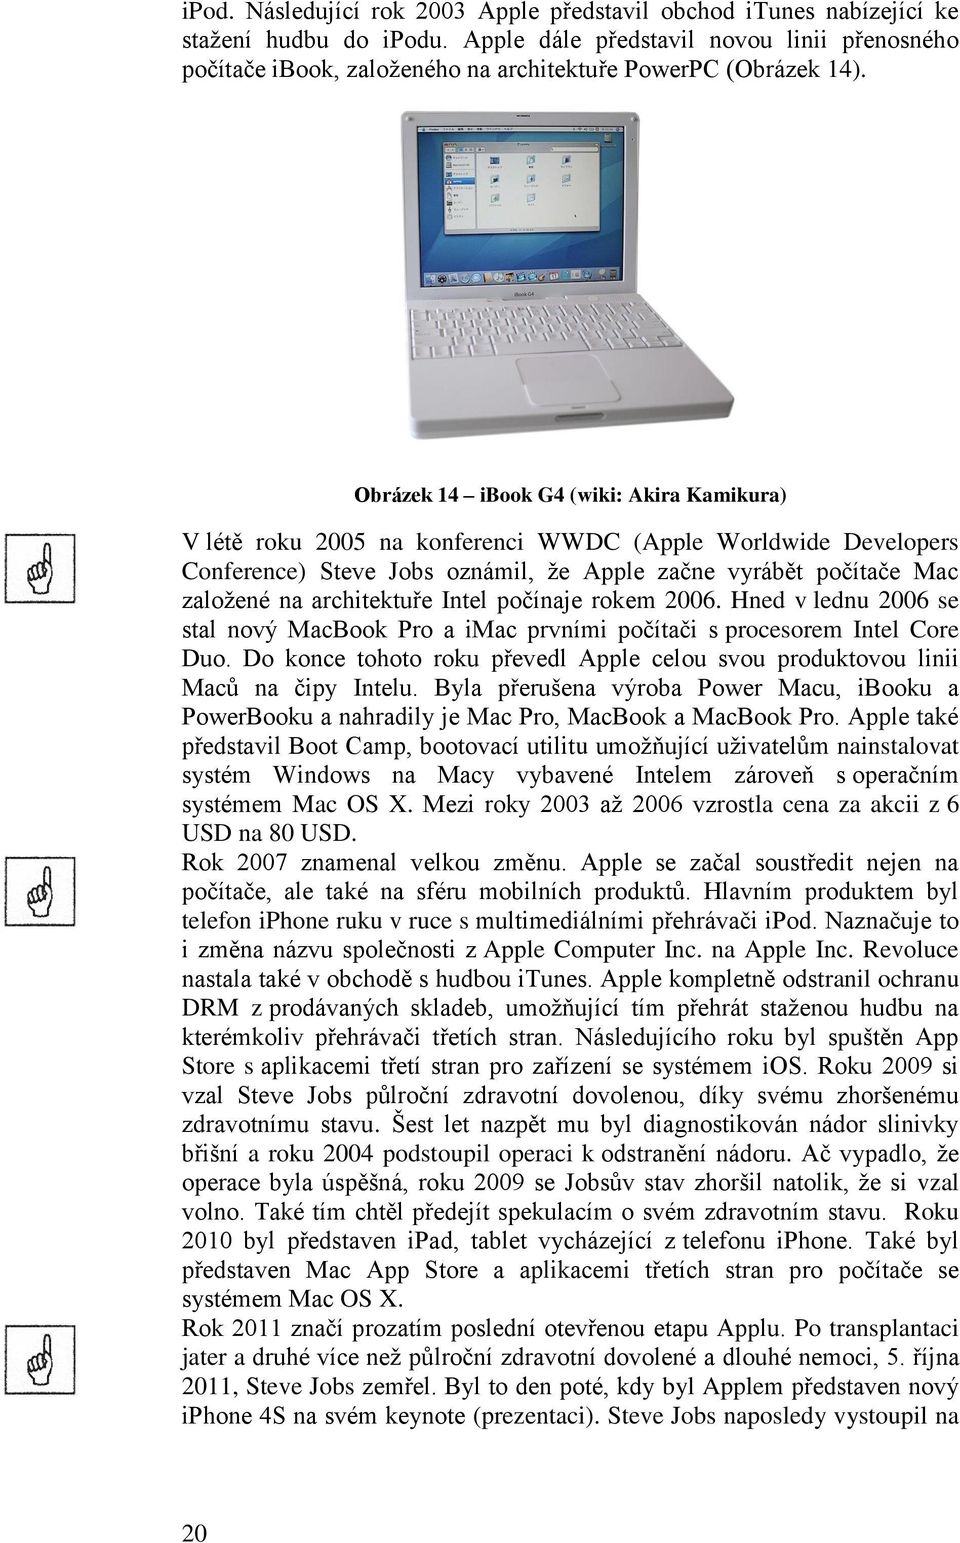 Obrázek 14 ibook G4 (wiki: Akira Kamikura) V létě roku 2005 na konferenci WWDC (Apple Worldwide Developers Conference) Steve Jobs oznámil, že Apple začne vyrábět počítače Mac založené na architektuře